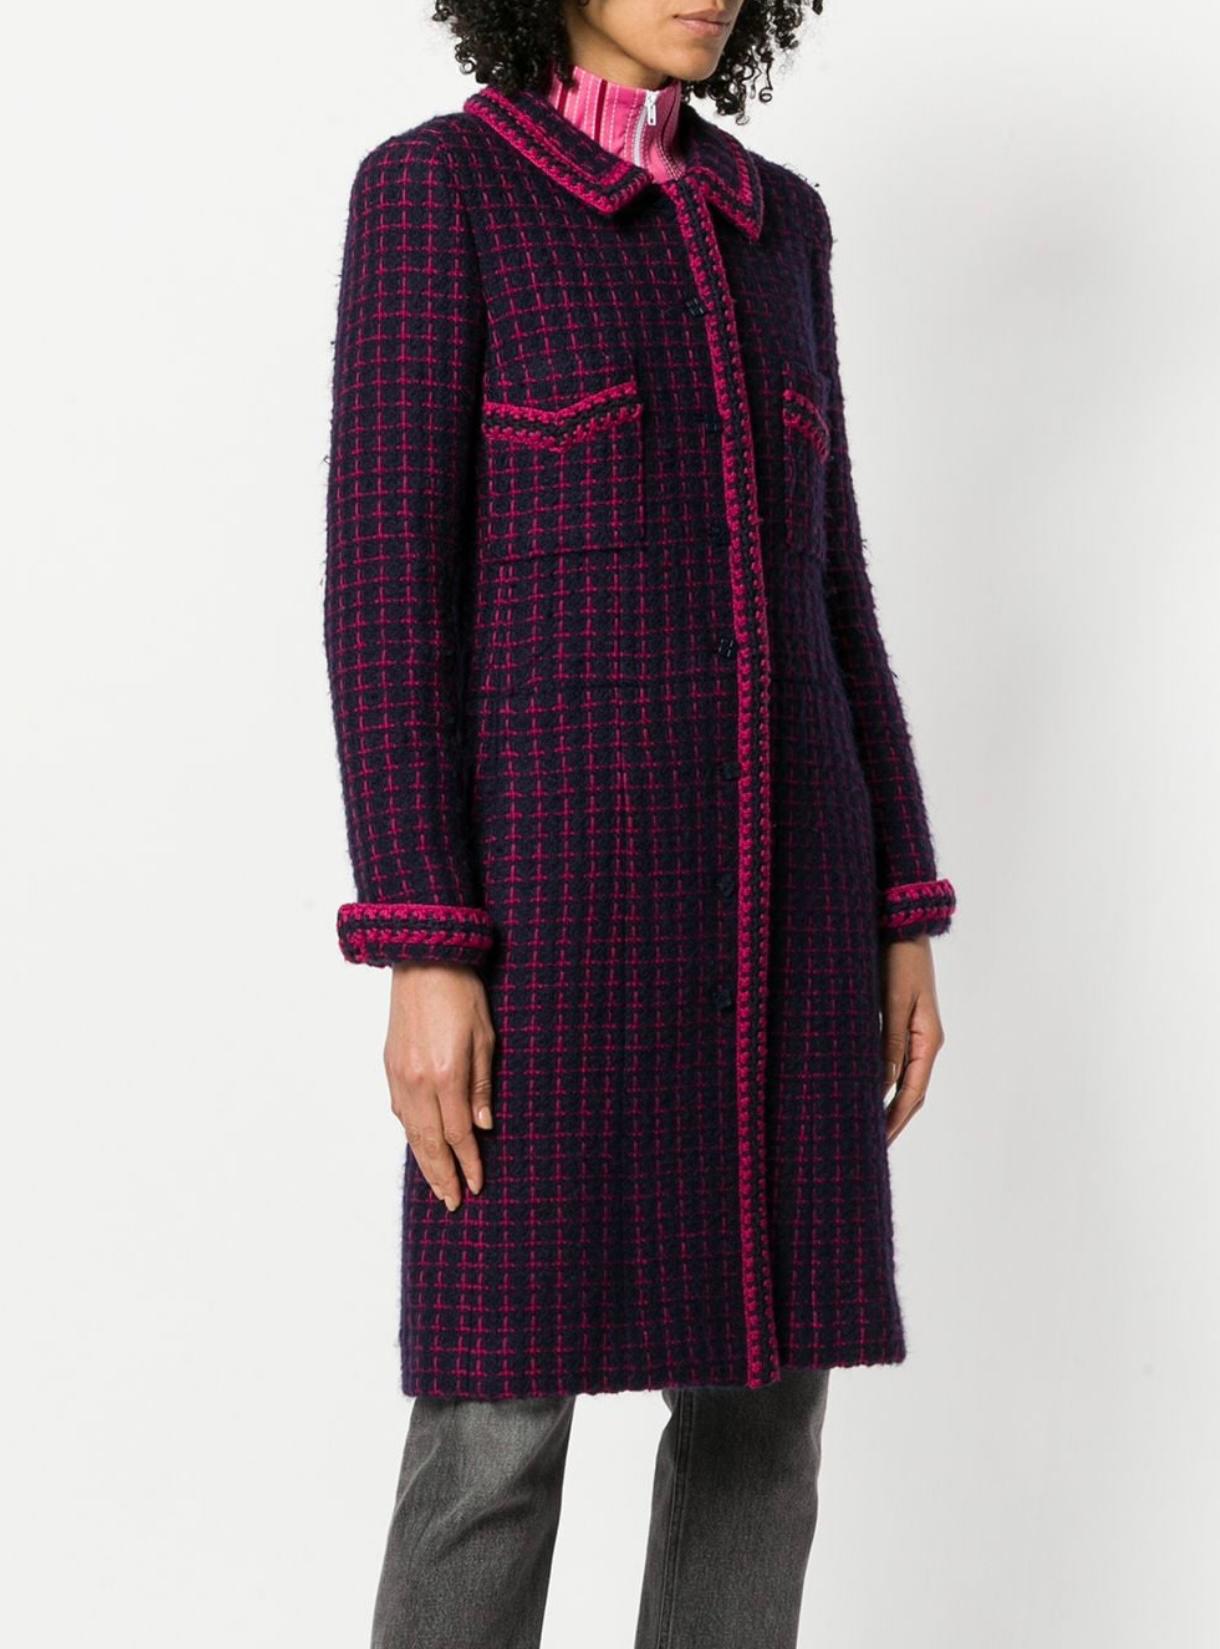 Manteau de collection en tweed de Chanel avec ceinture à logo de la Collection S de l'automne 2000 de Karl Lagerfeld.
- Boutons du logo CC
- doublure en soie ton sur ton
Taille 38 FR. Conservé sans avoir été porté.